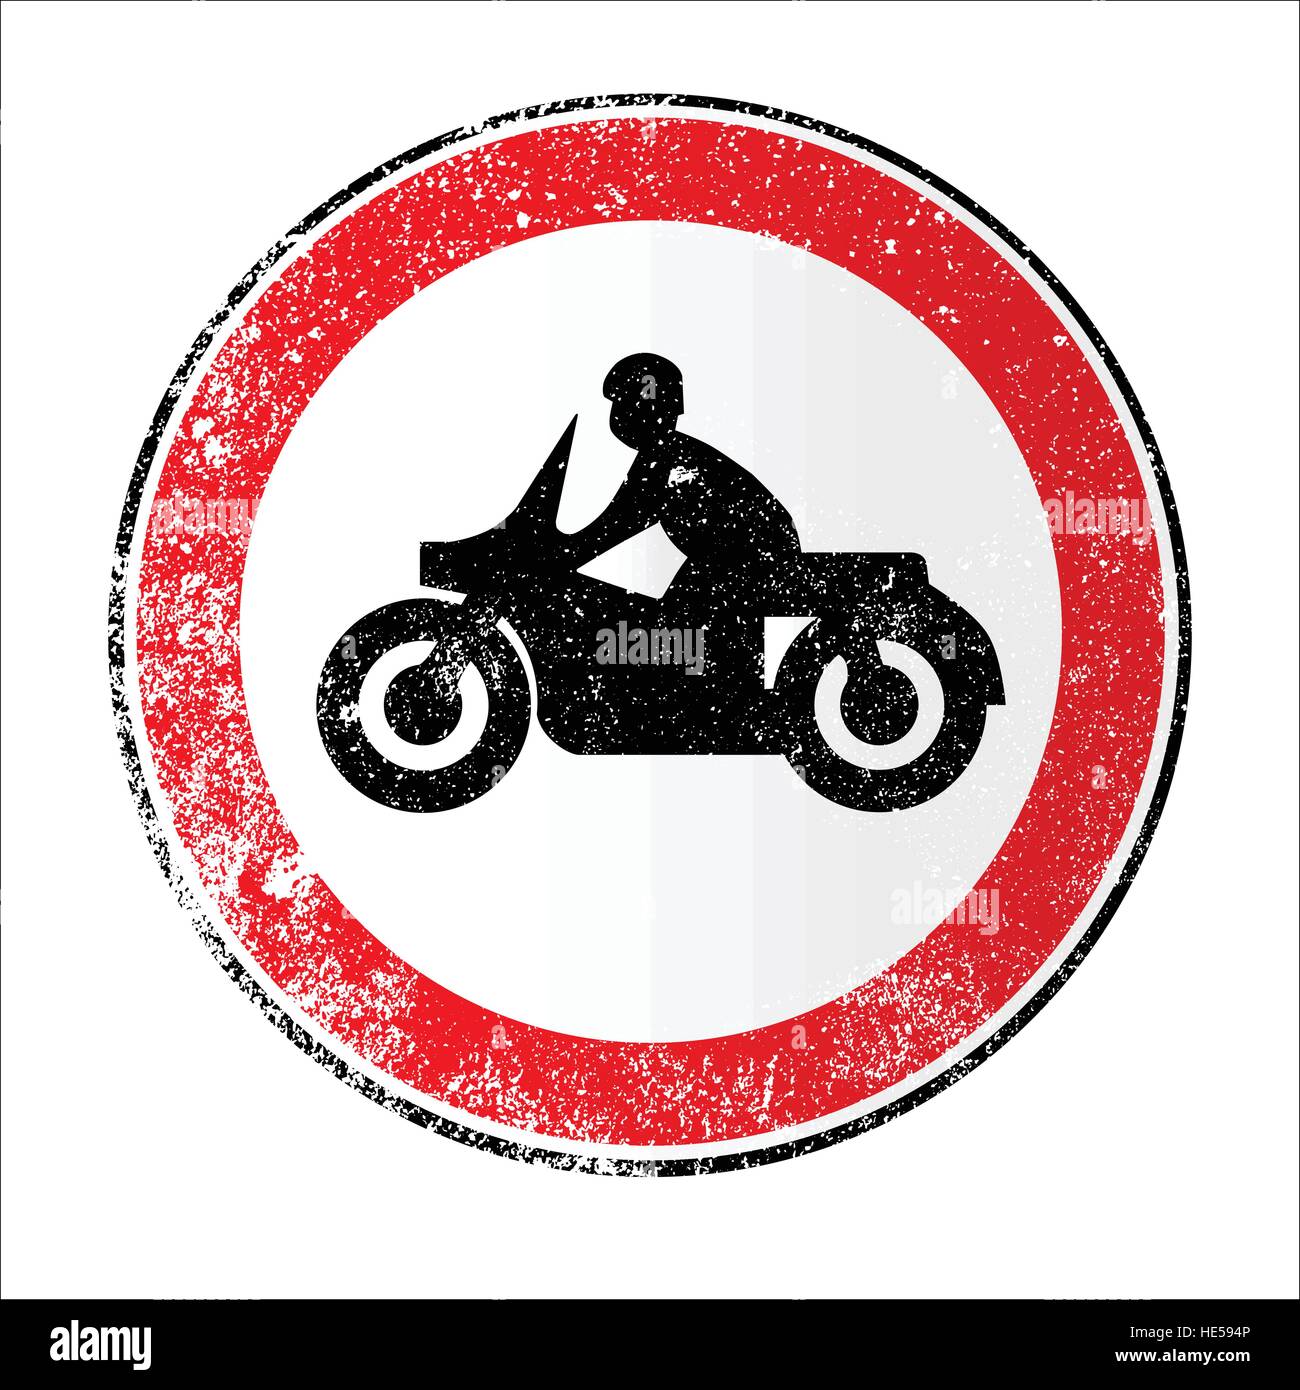 Una grande rotonda rossa la visualizzazione del traffico di un motociclo Illustrazione Vettoriale